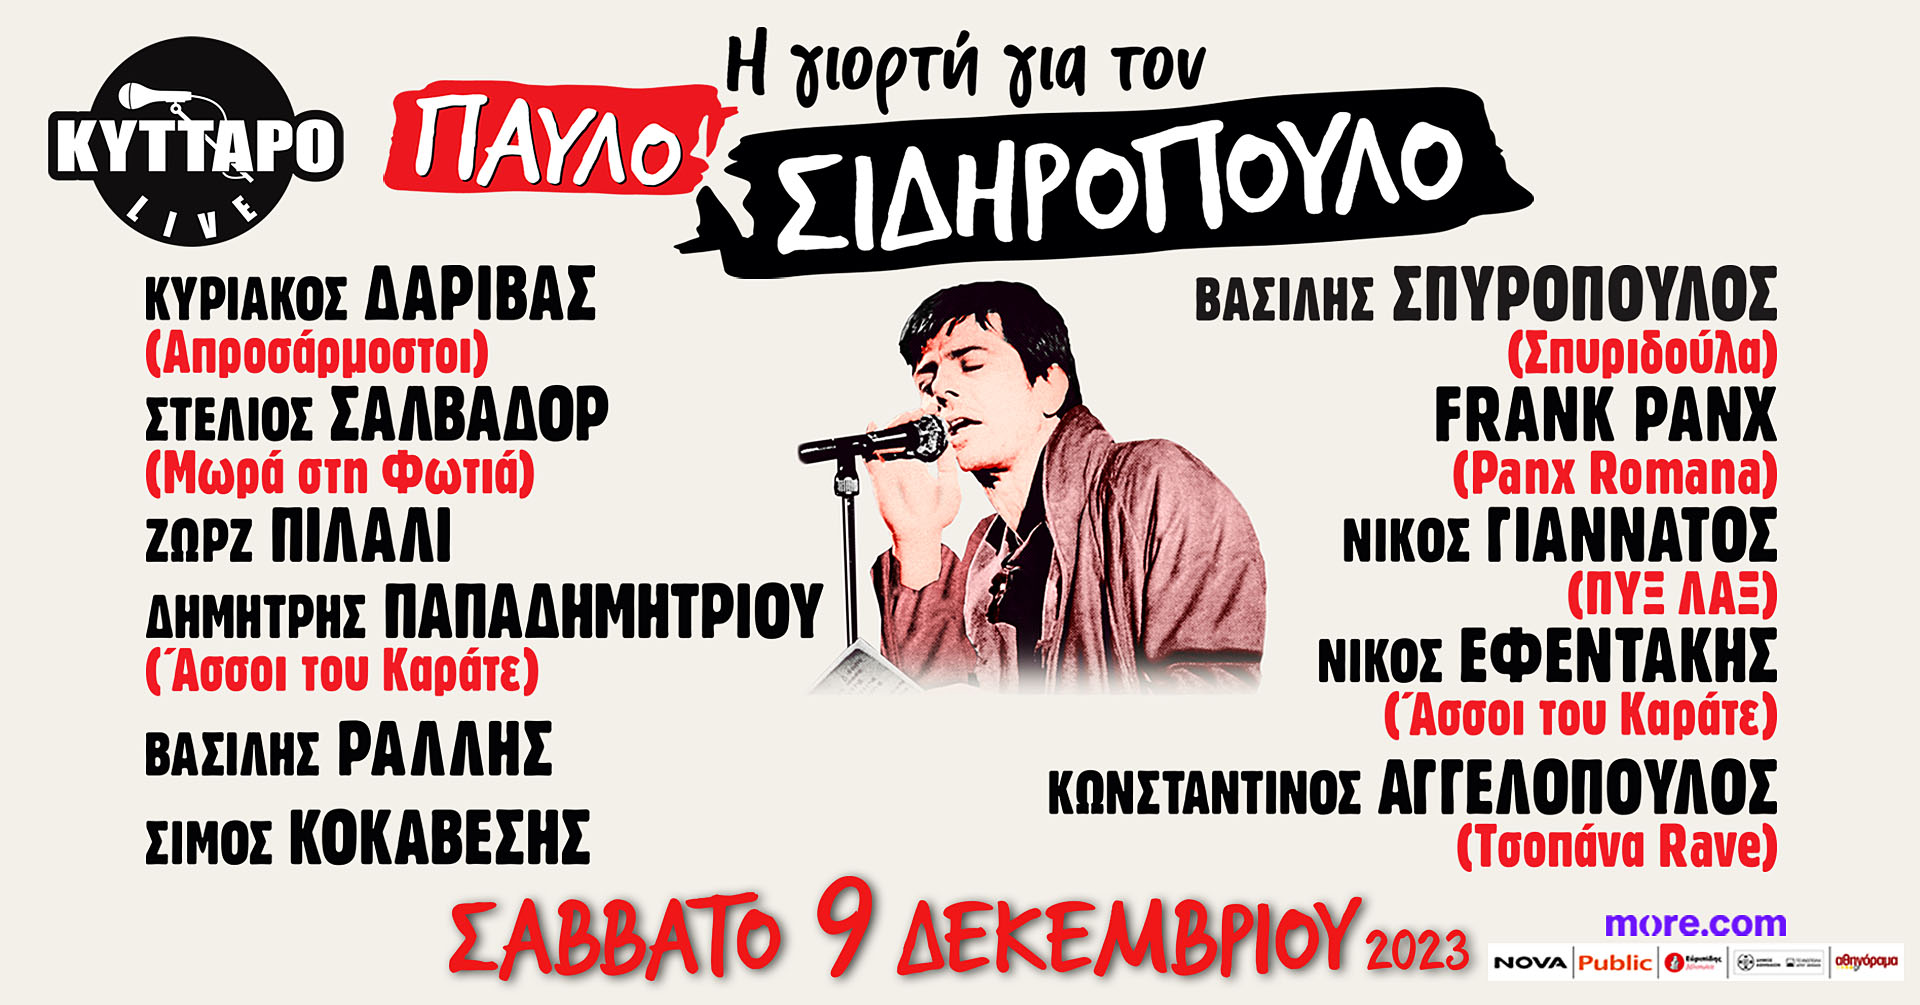 KYTTARO Live Club / ΚΥΤΤΑΡΟ